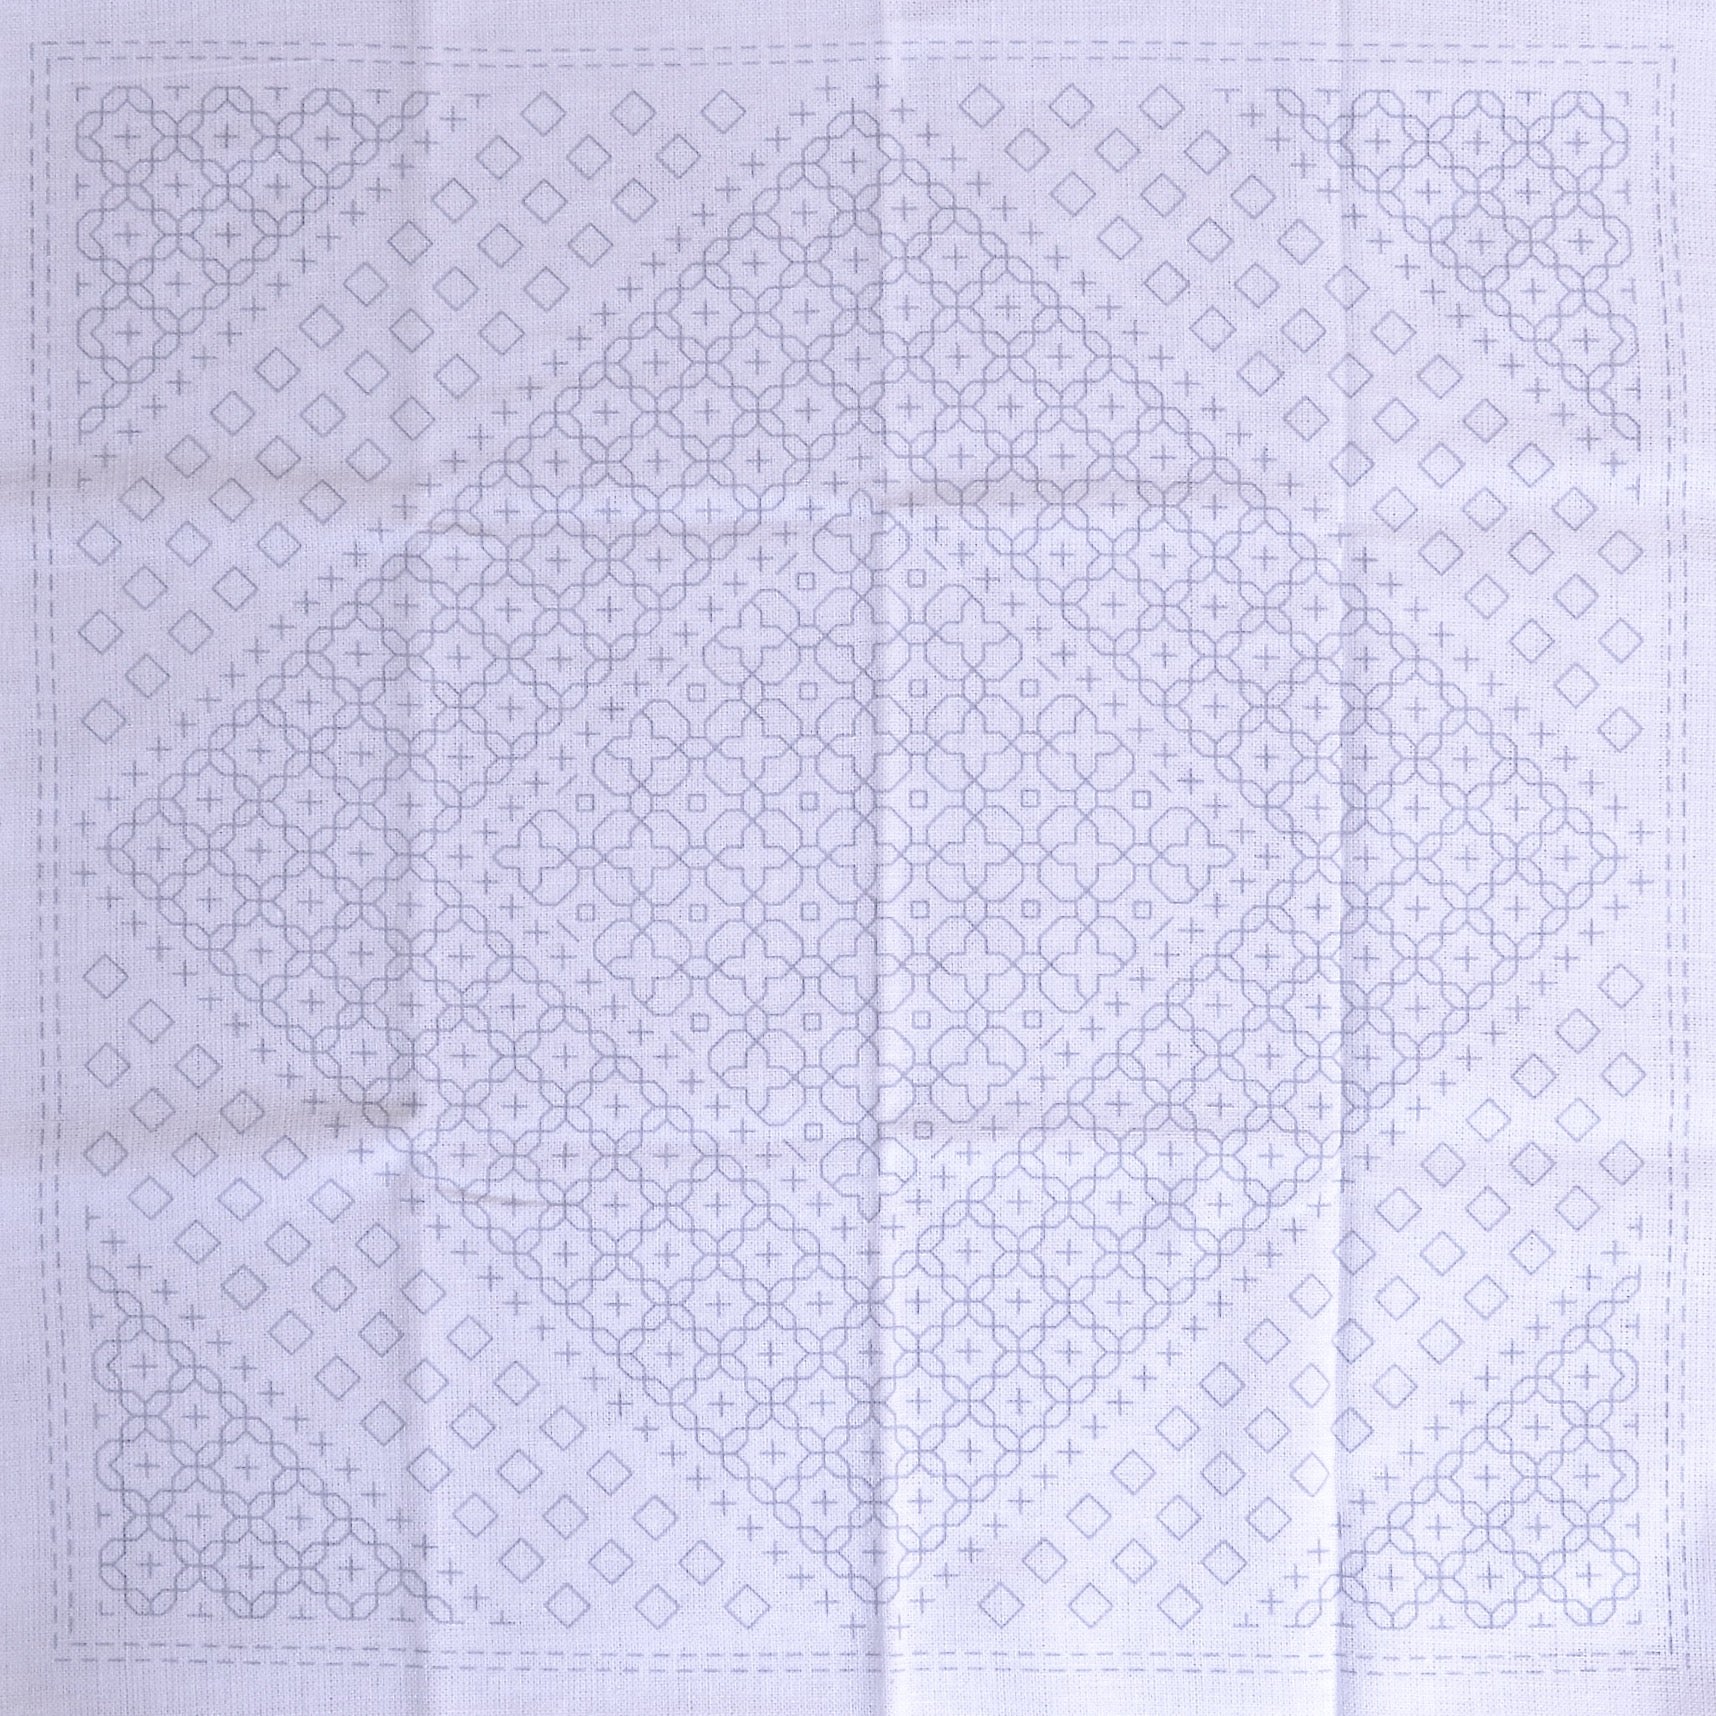 Kugurizashi Sashiko Pre-printed Fabric,  Morning Glory